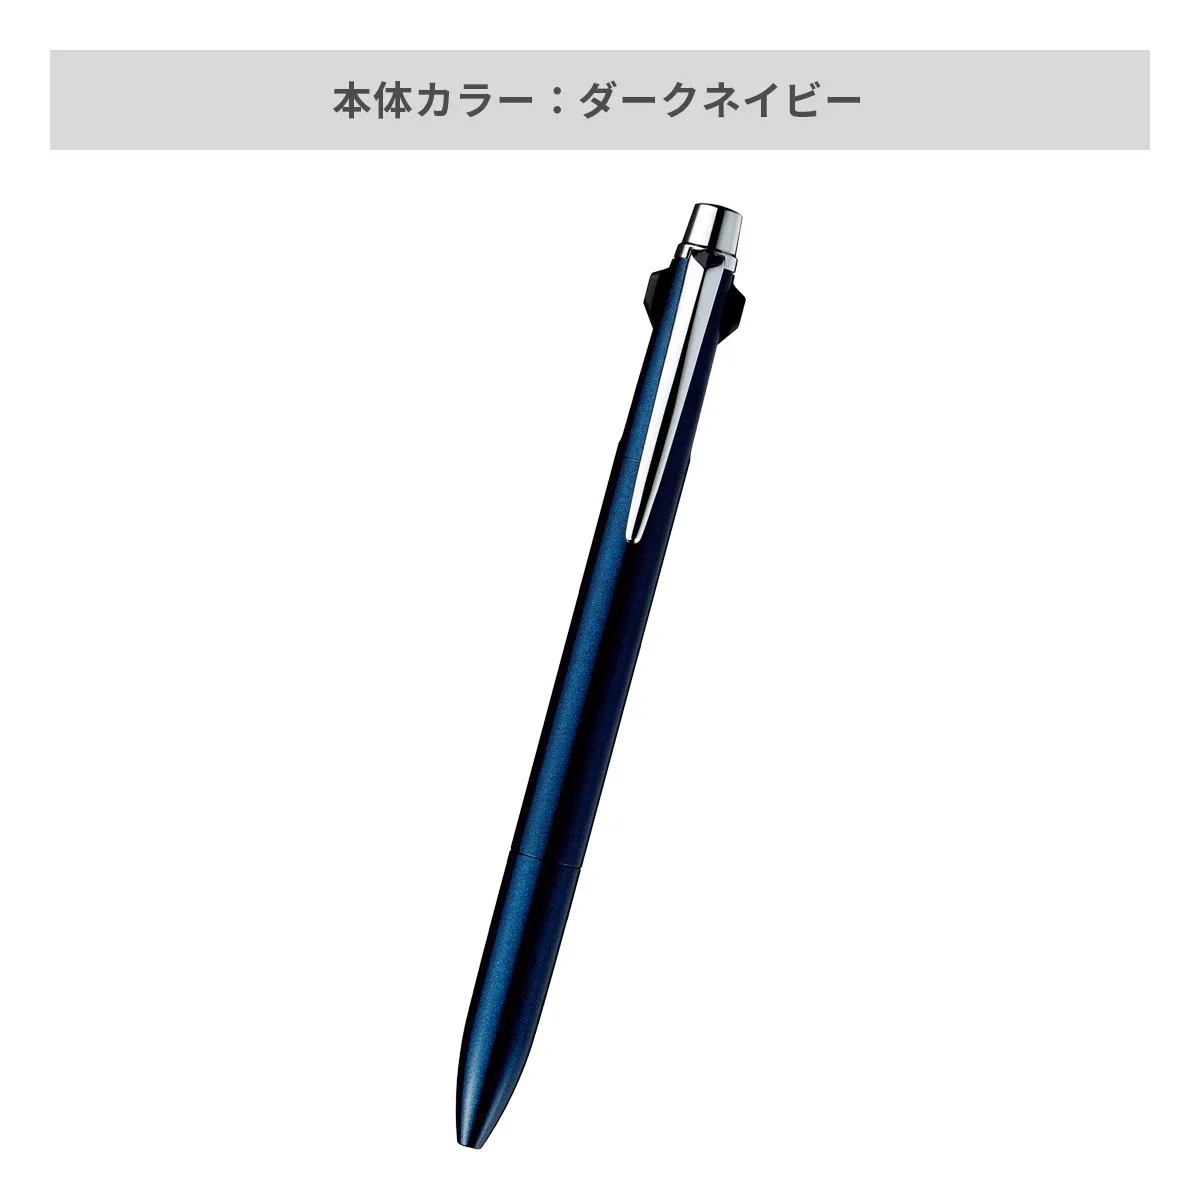 【短納期】三菱鉛筆 ジェットストリーム プライム 多機能ペン 2&1 0.5mm【多機能ペン / レーザー彫刻】 画像4